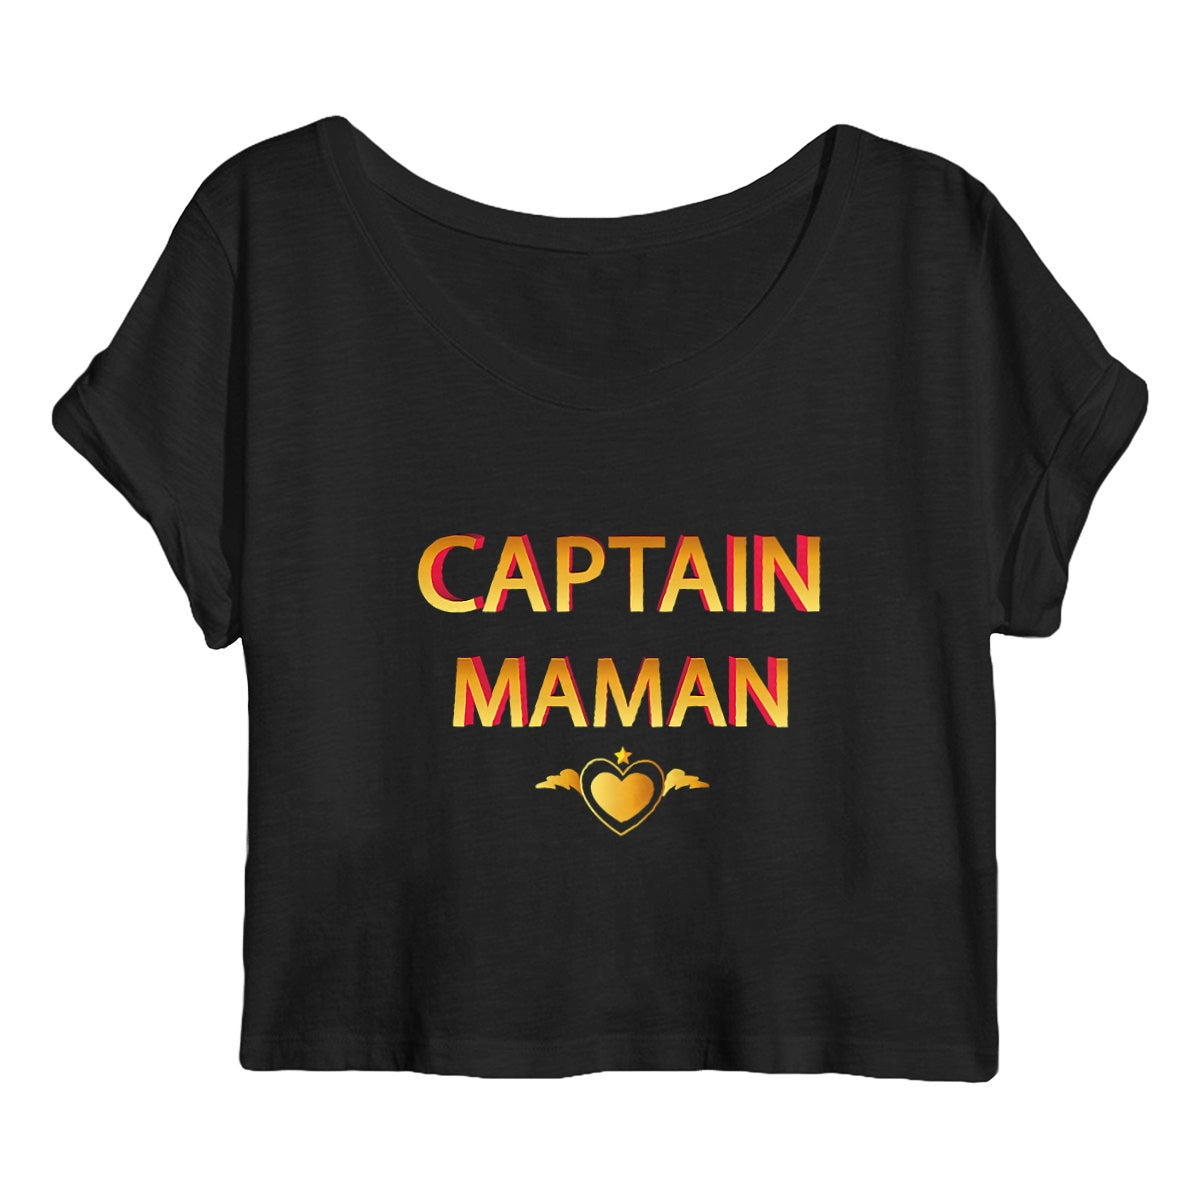 Crop top captain maman